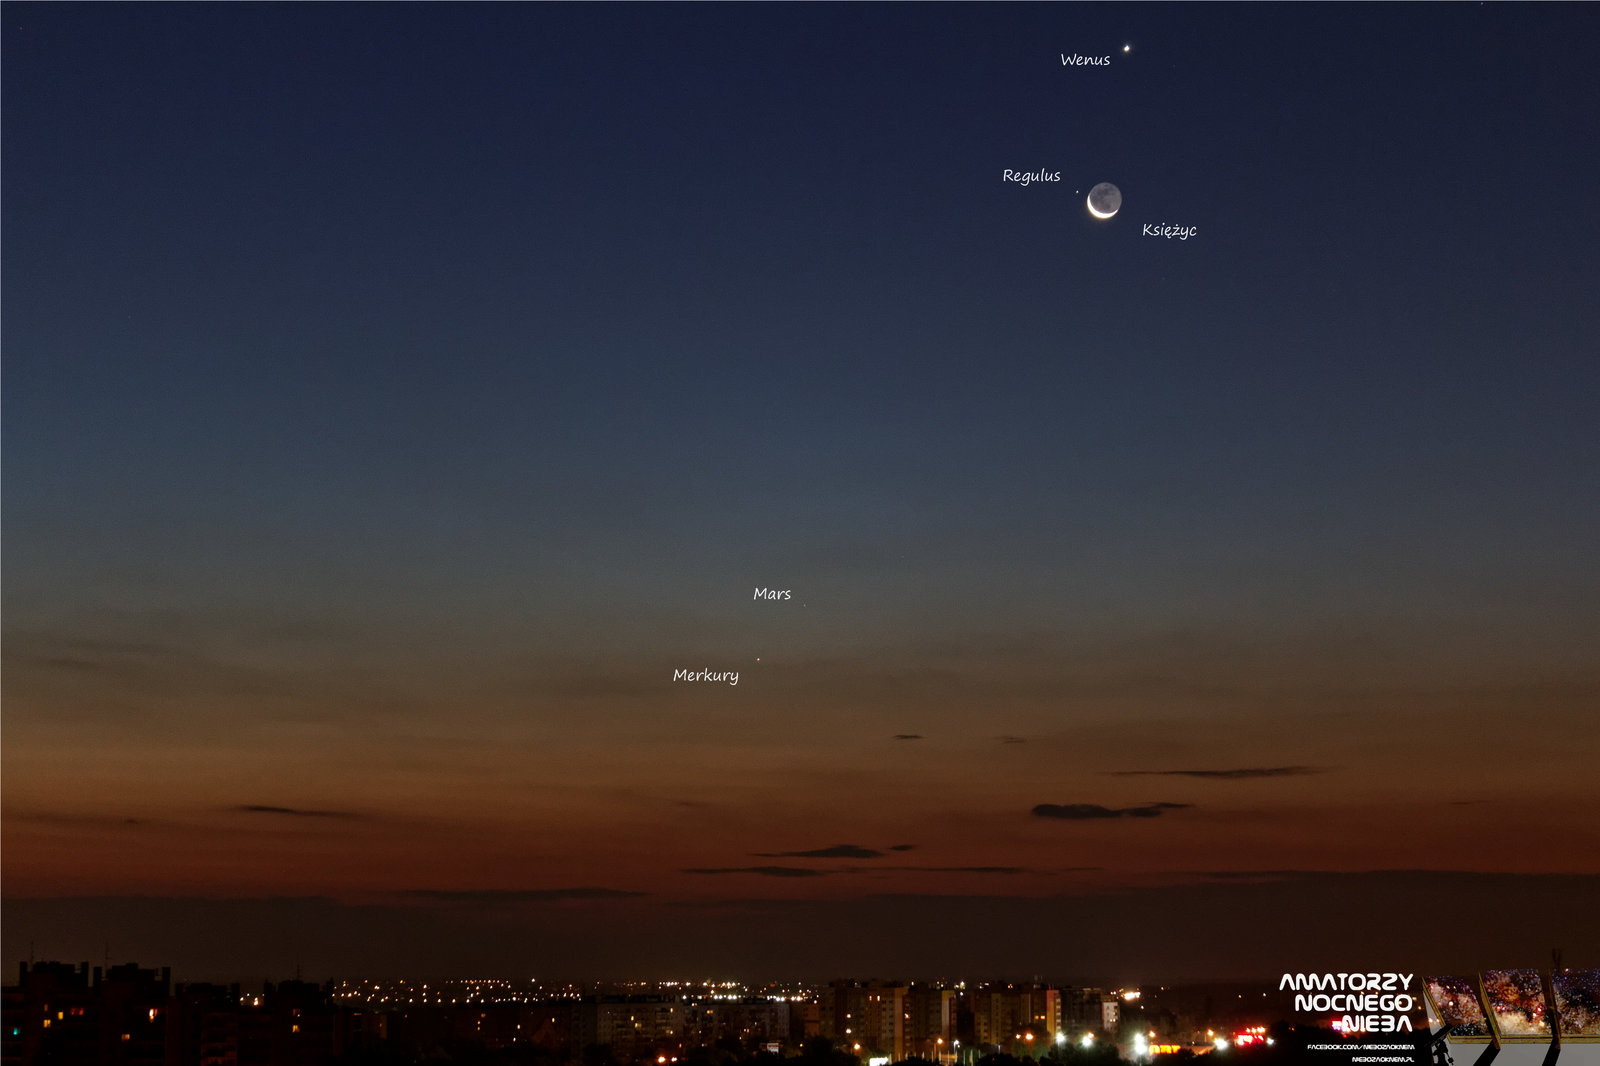 Wenus Księżyc Regulus Mars Merkury.jpg